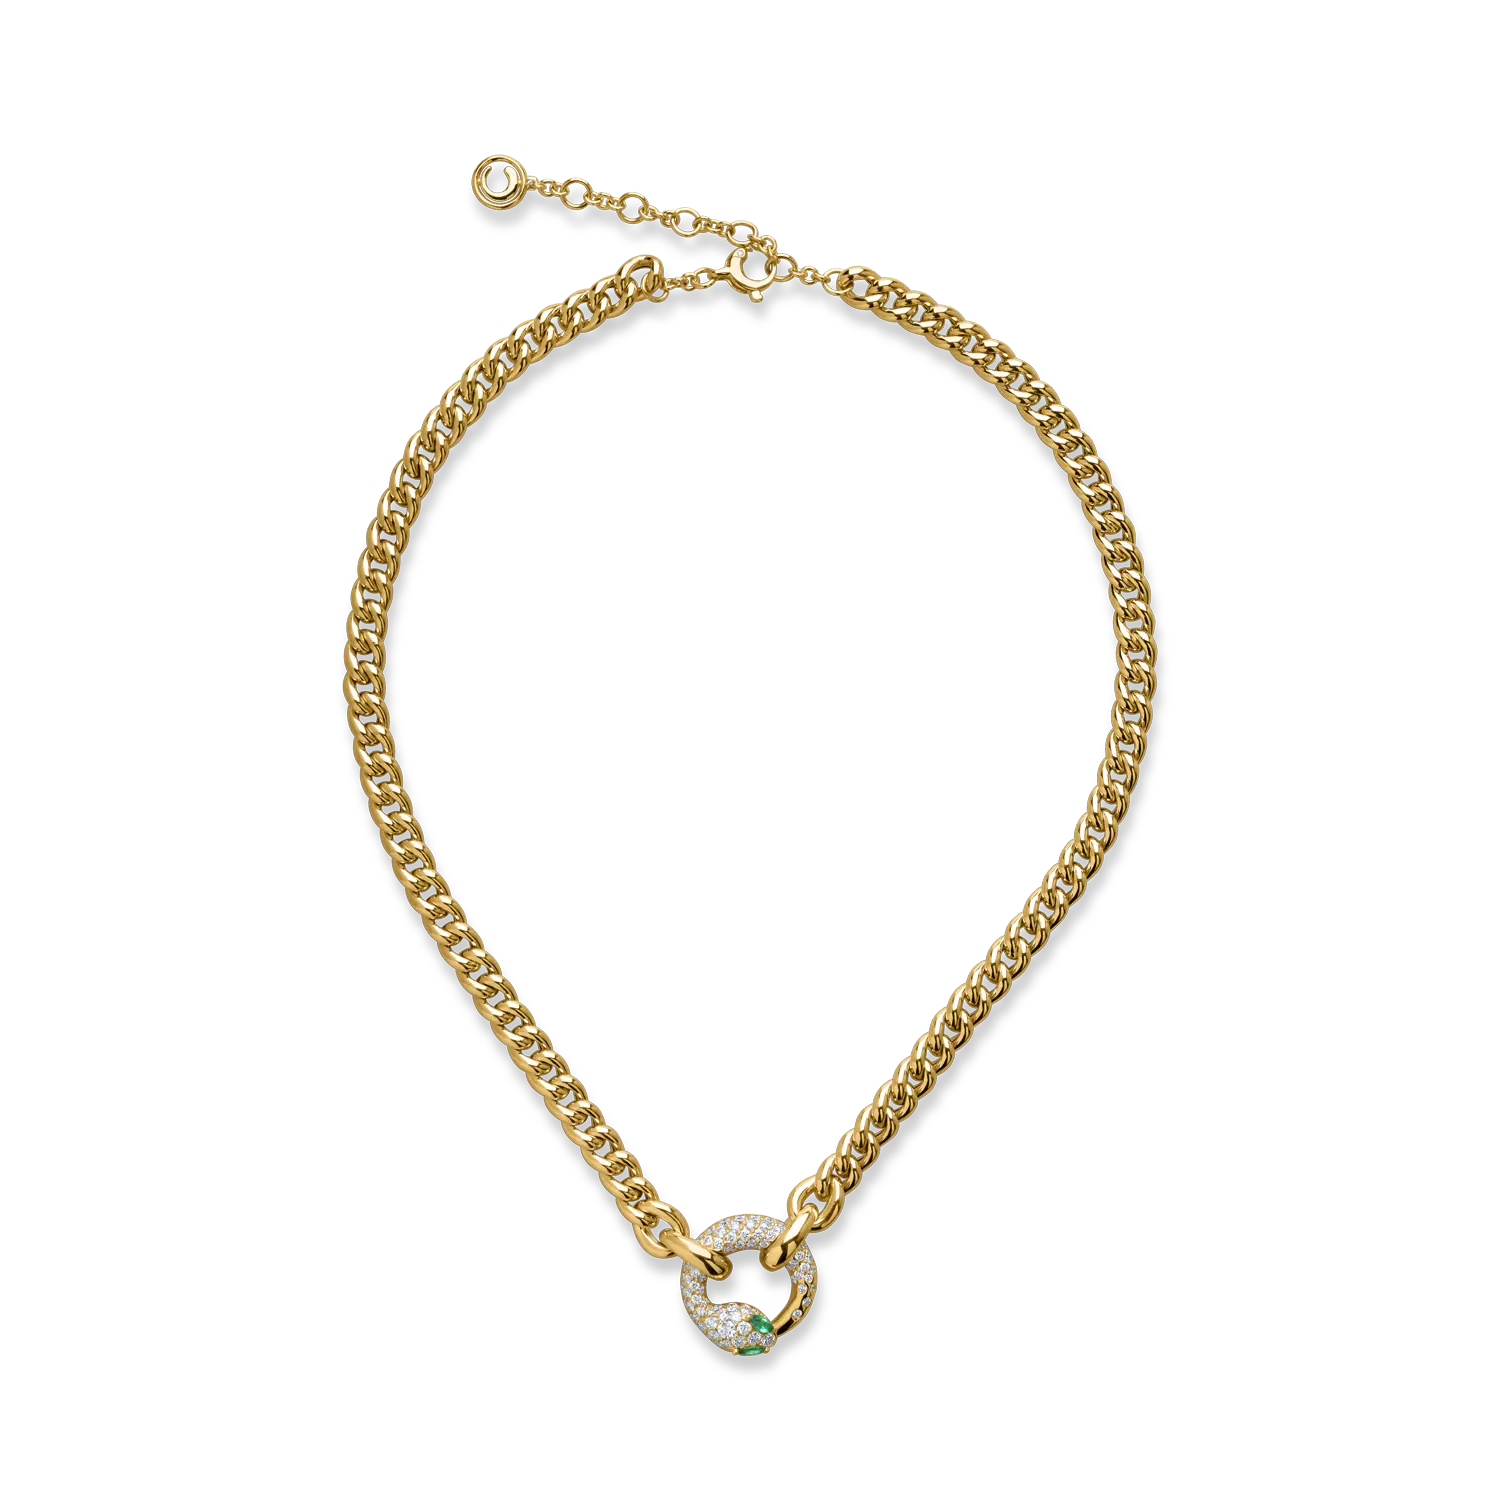 Sárga arany kígyófüggő nyaklánc 0.18ct smaragddal és 1.42ct gyémánttal